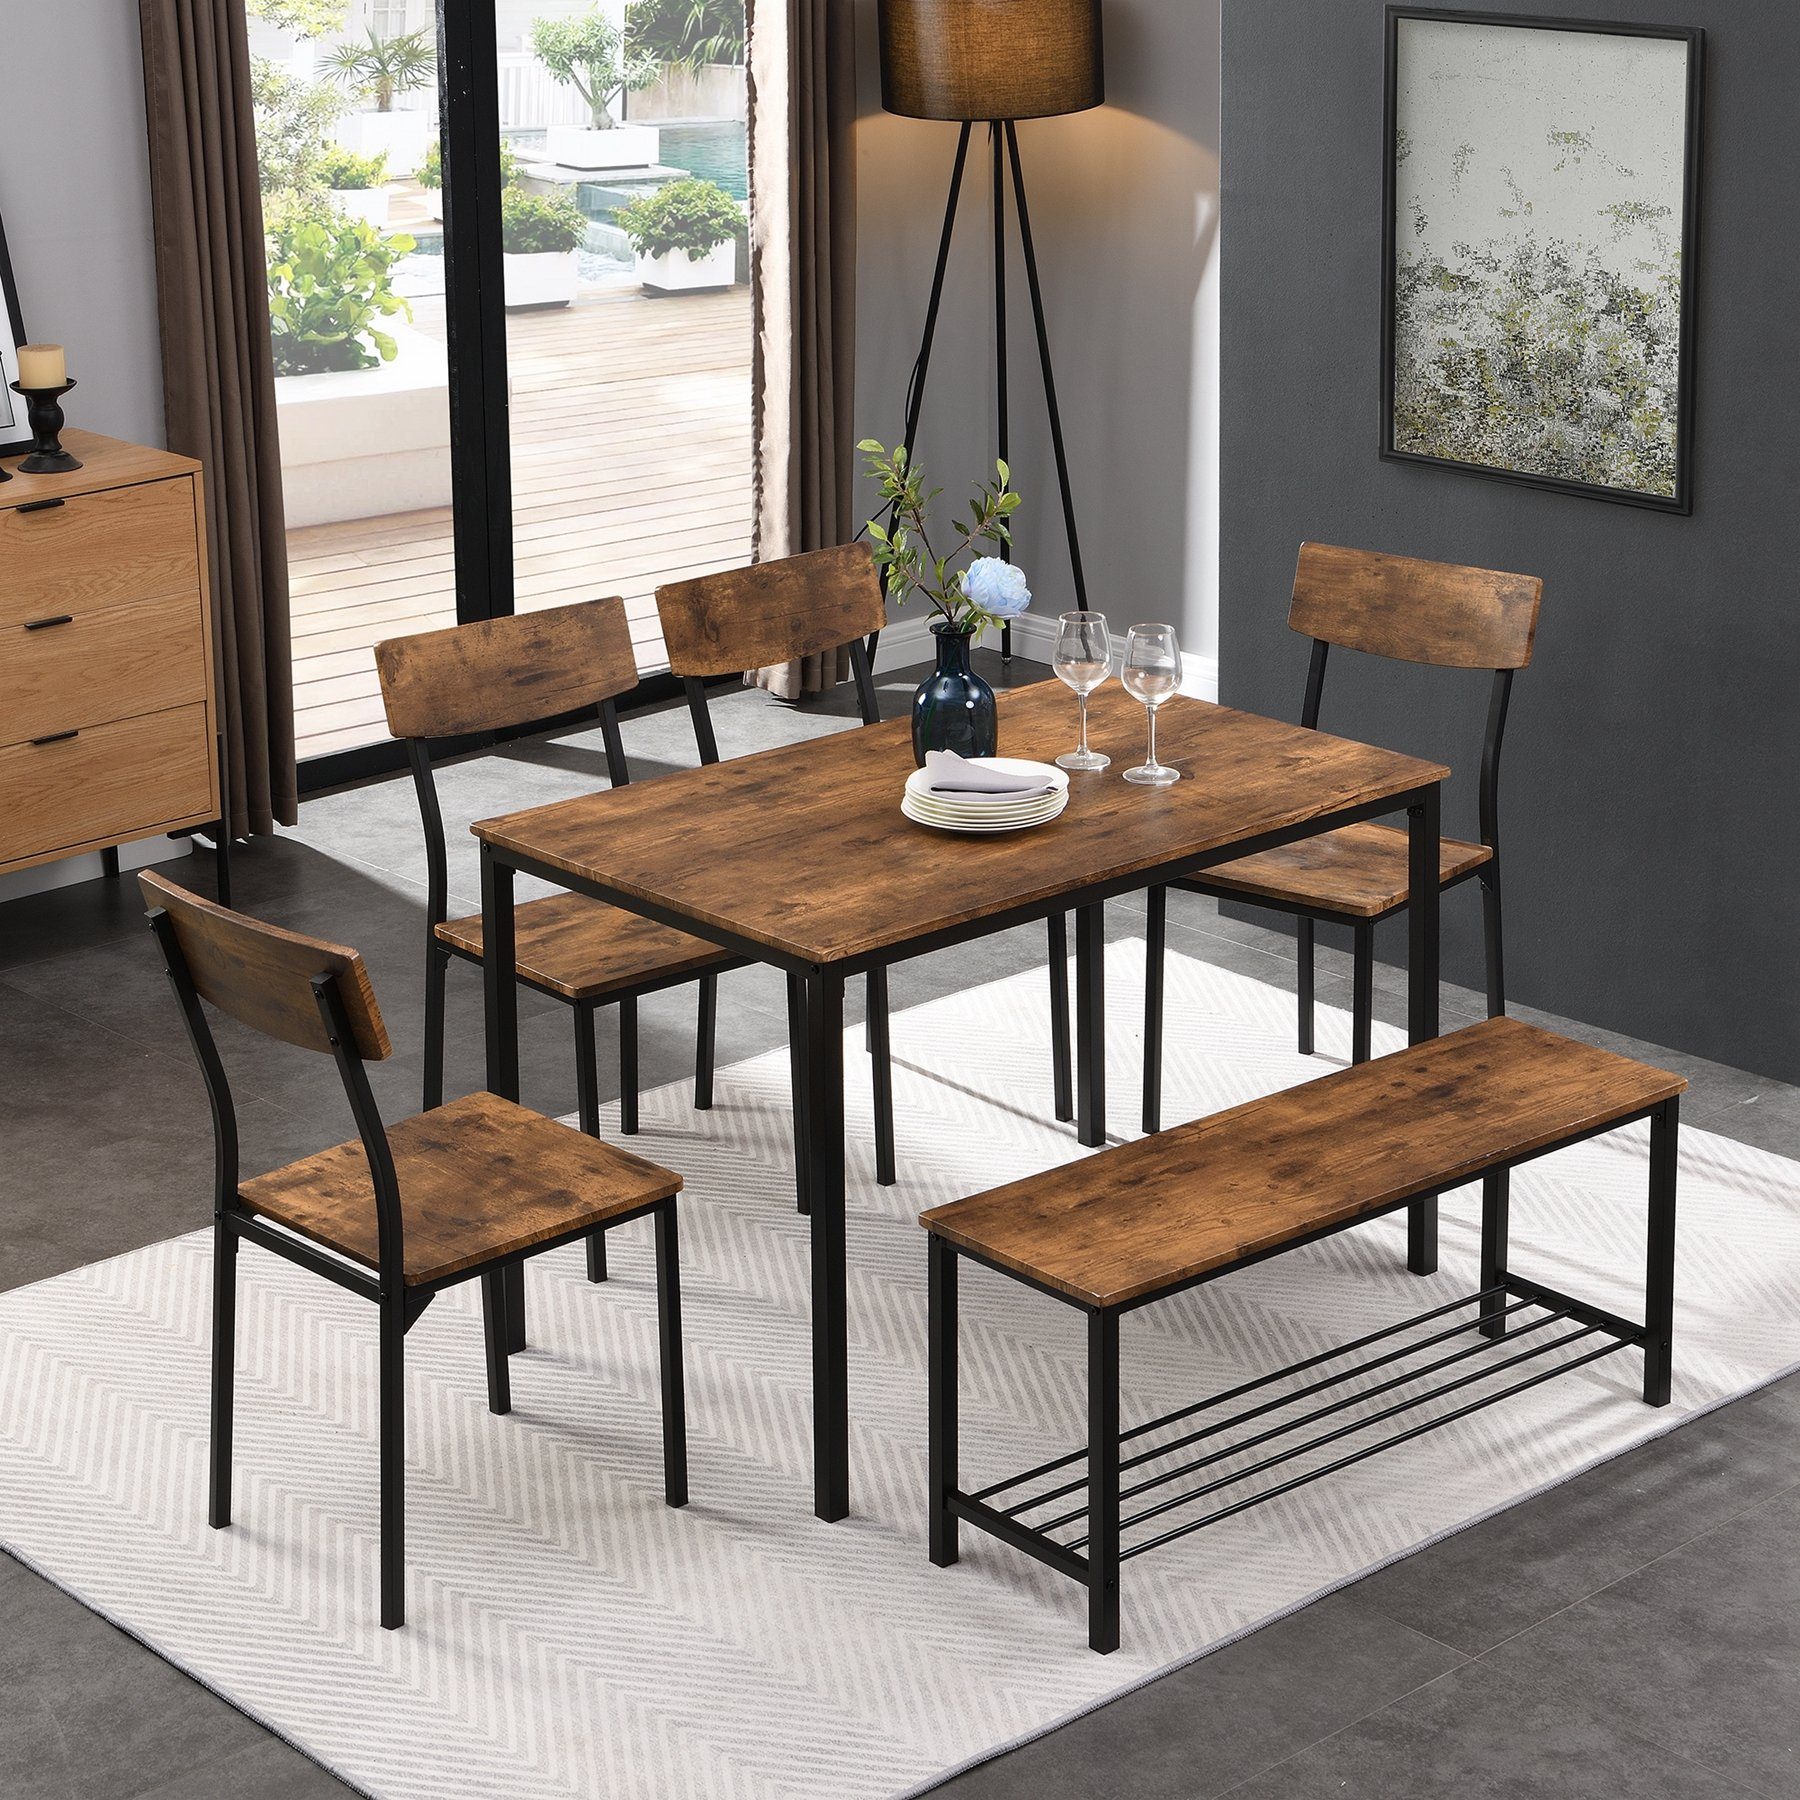 Celya Esszimmerstuhl Esstisch Stuhl und Bank Set 6 Holz Stahlrahmen,Küche Esstisch Set, 1*Tisch+4*Stühle+1*Schemel, Industrie Stil